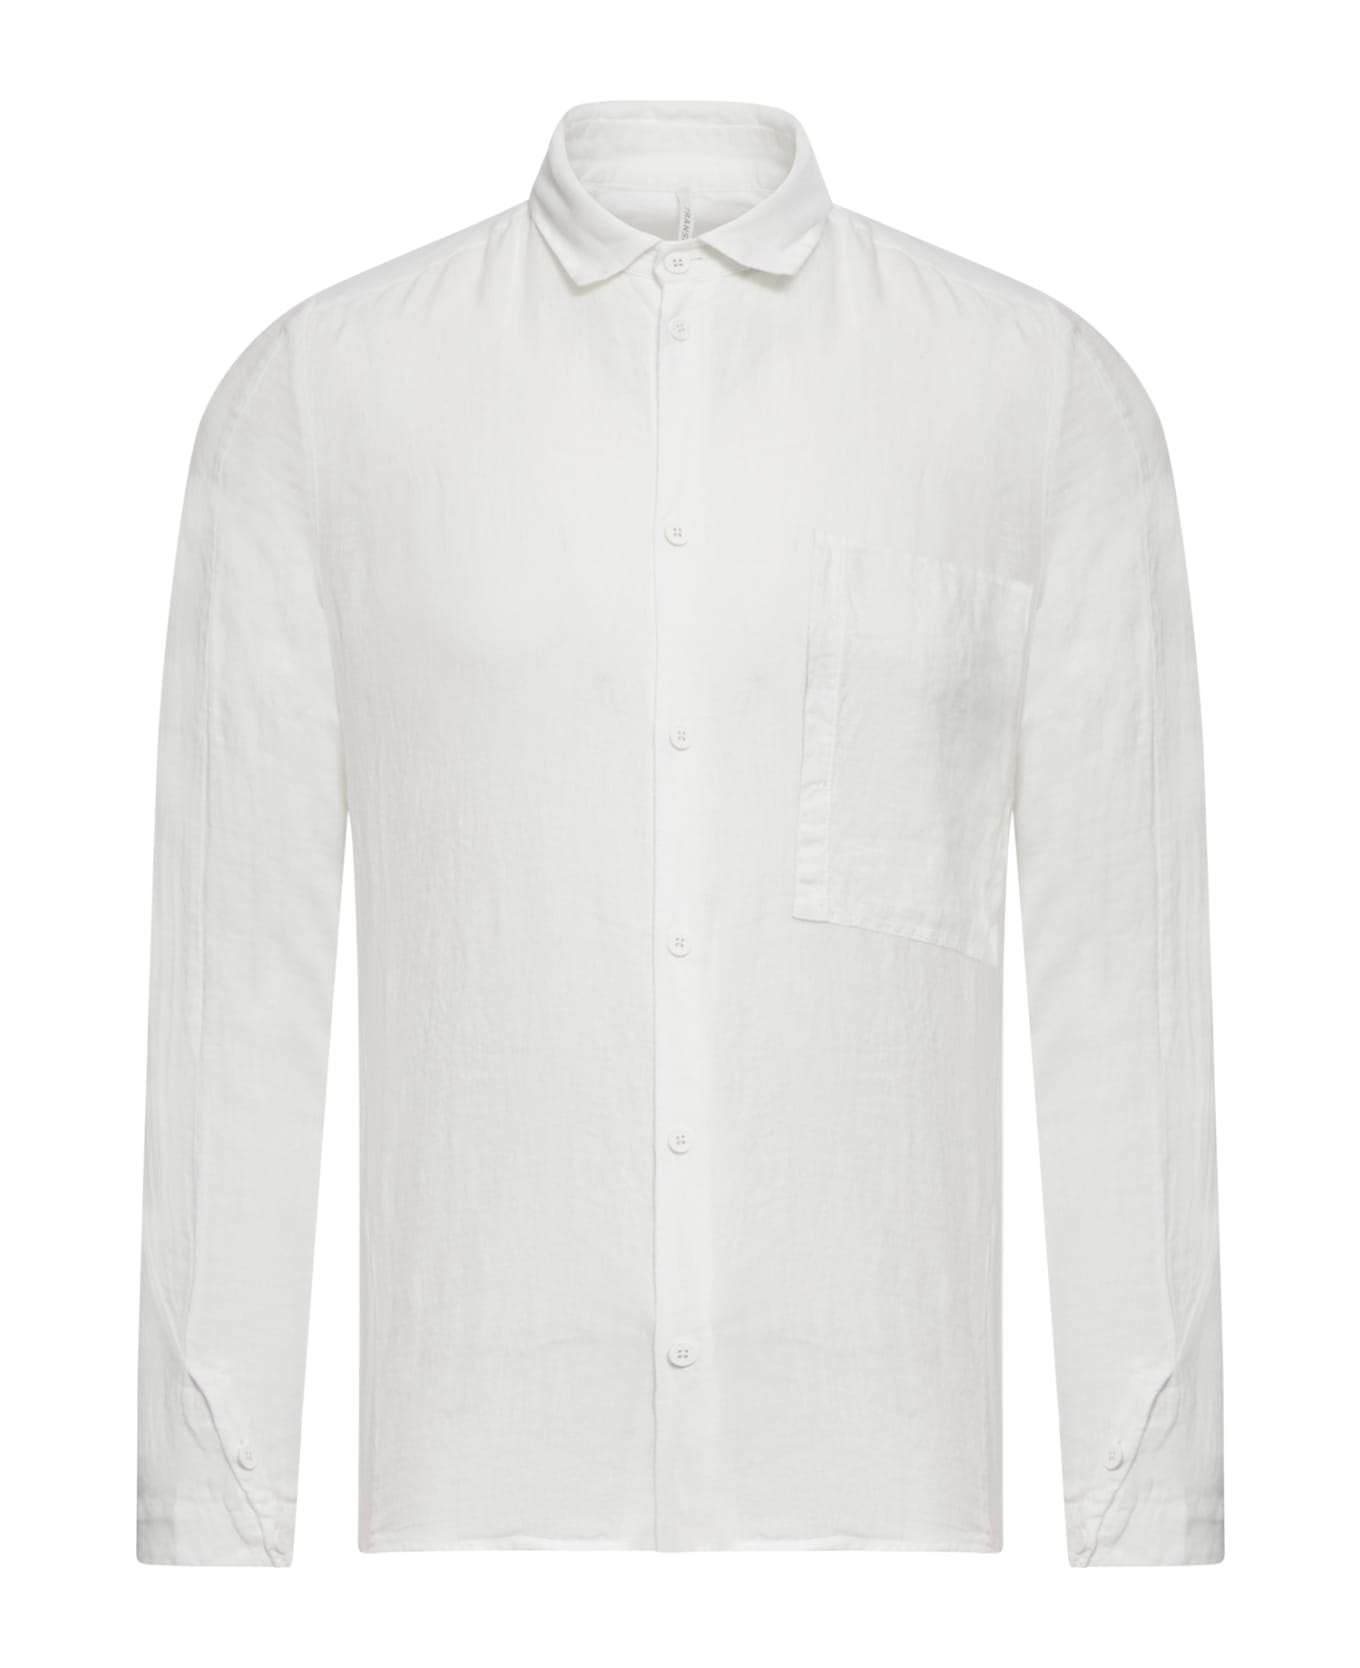 Transit Shirt - Optical White シャツ